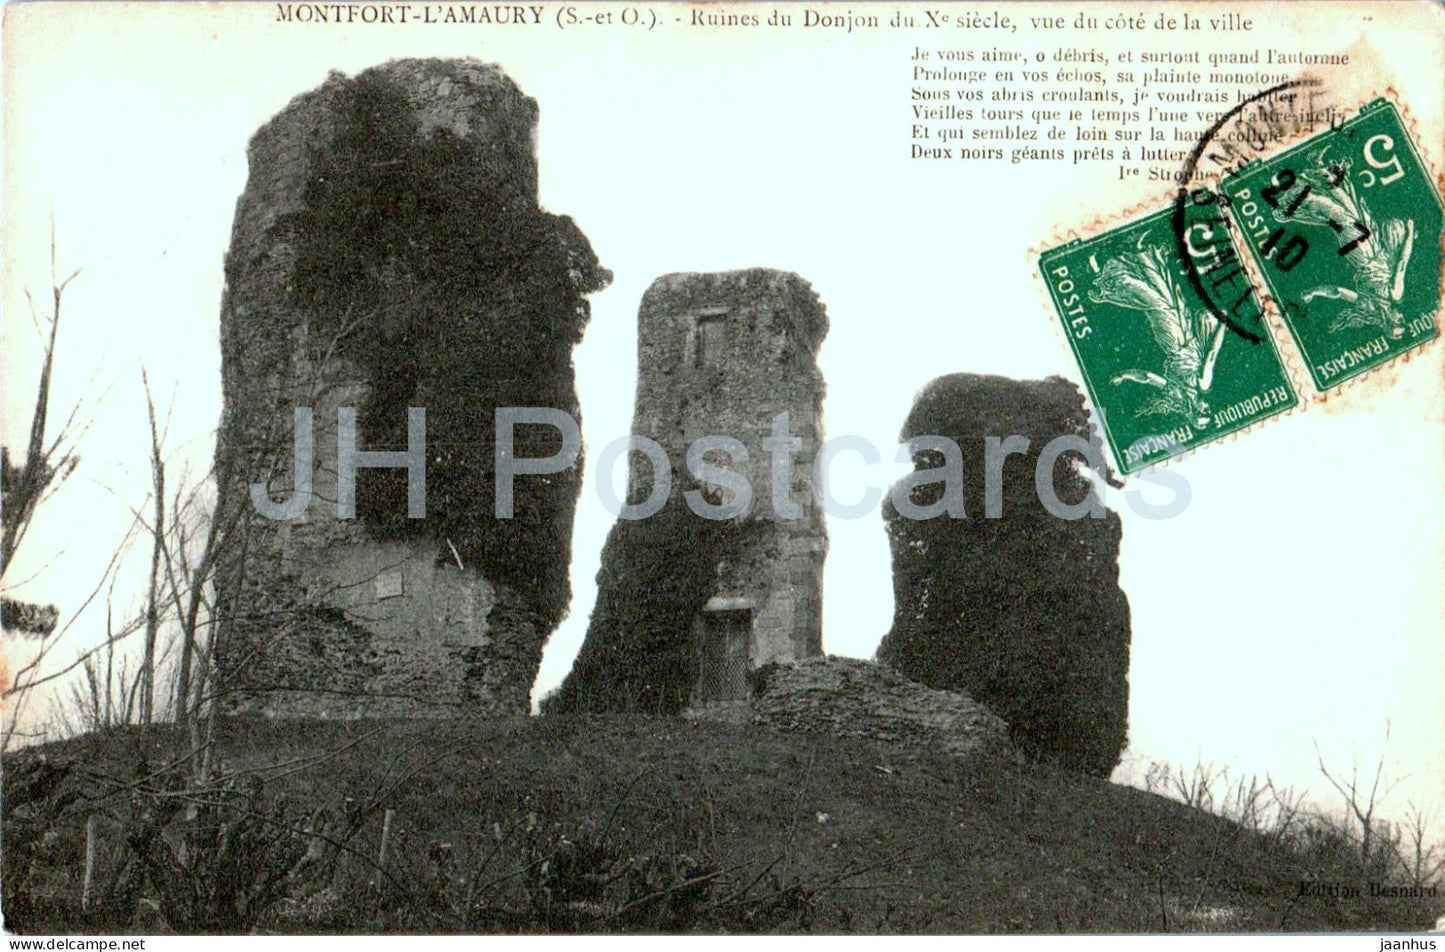 Montfort L'Amaury - Ruines du Donjon du X siecle - vue du cote de la ville - old postcard - 1910 - France - used - JH Postcards